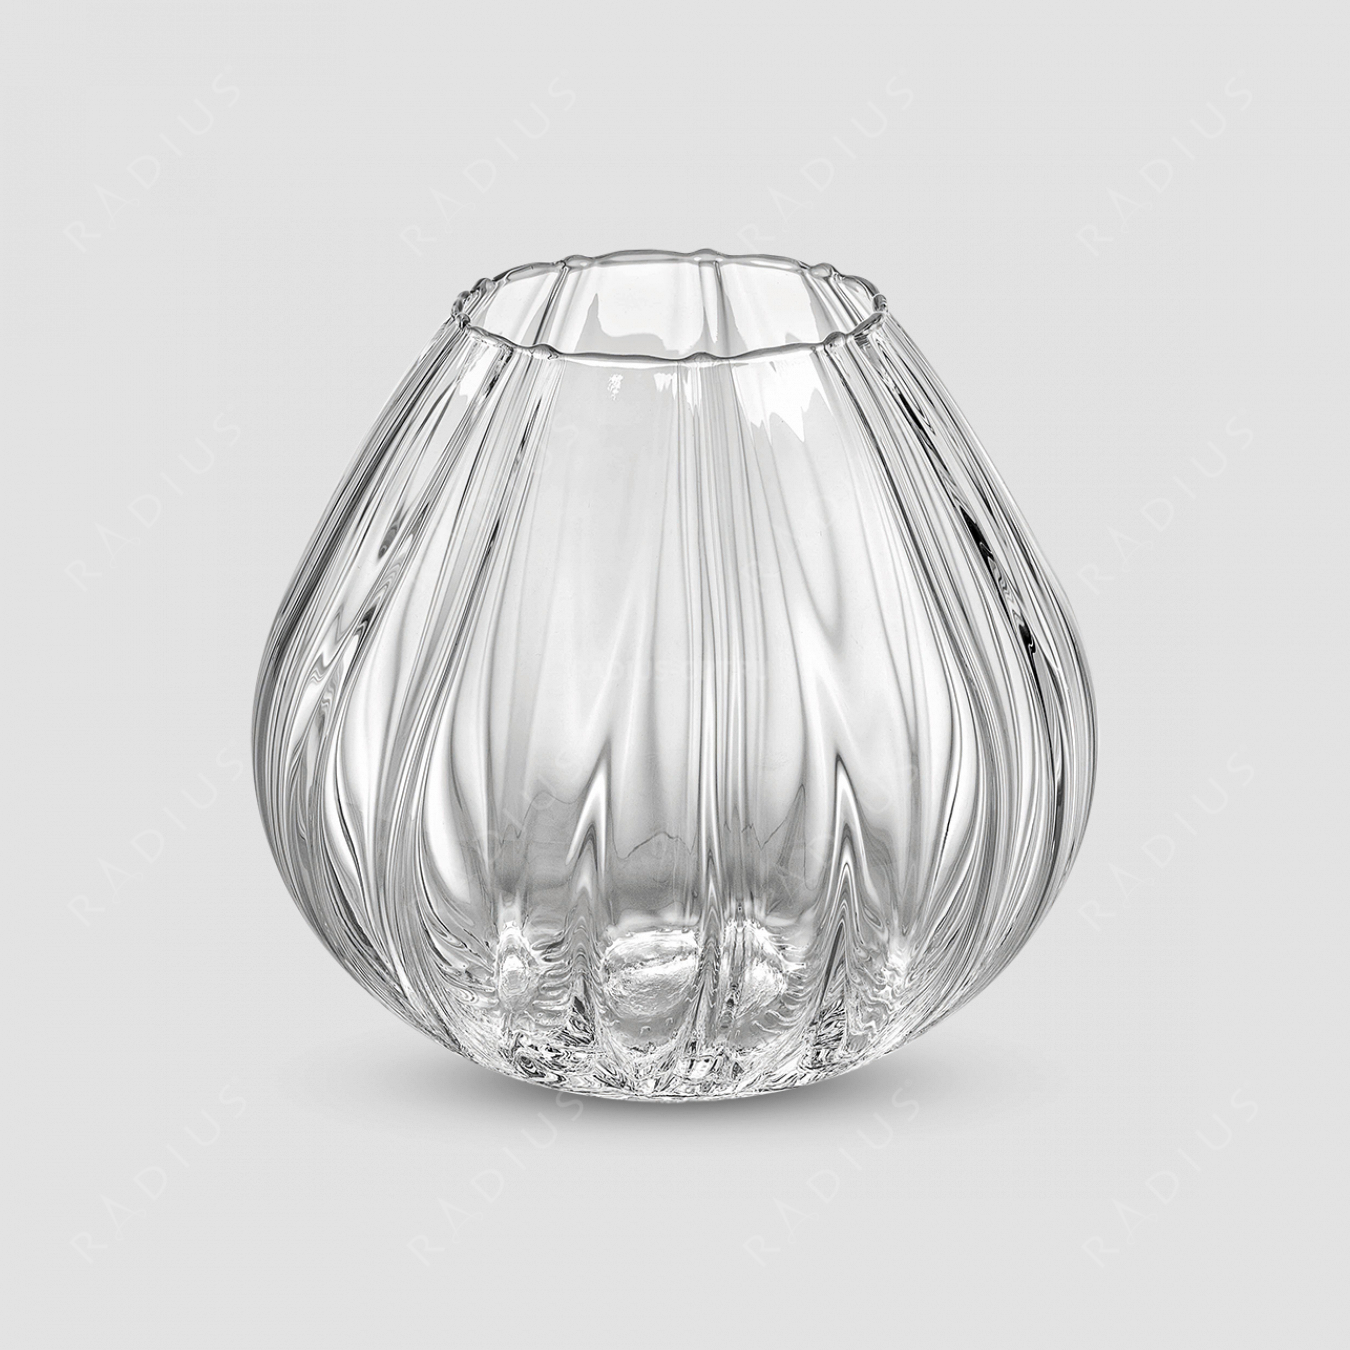 Стеклянная ваза для цветов, высота: 21,5 см, материал: стекло, серия Nuvola, IVV (Italy), Италия